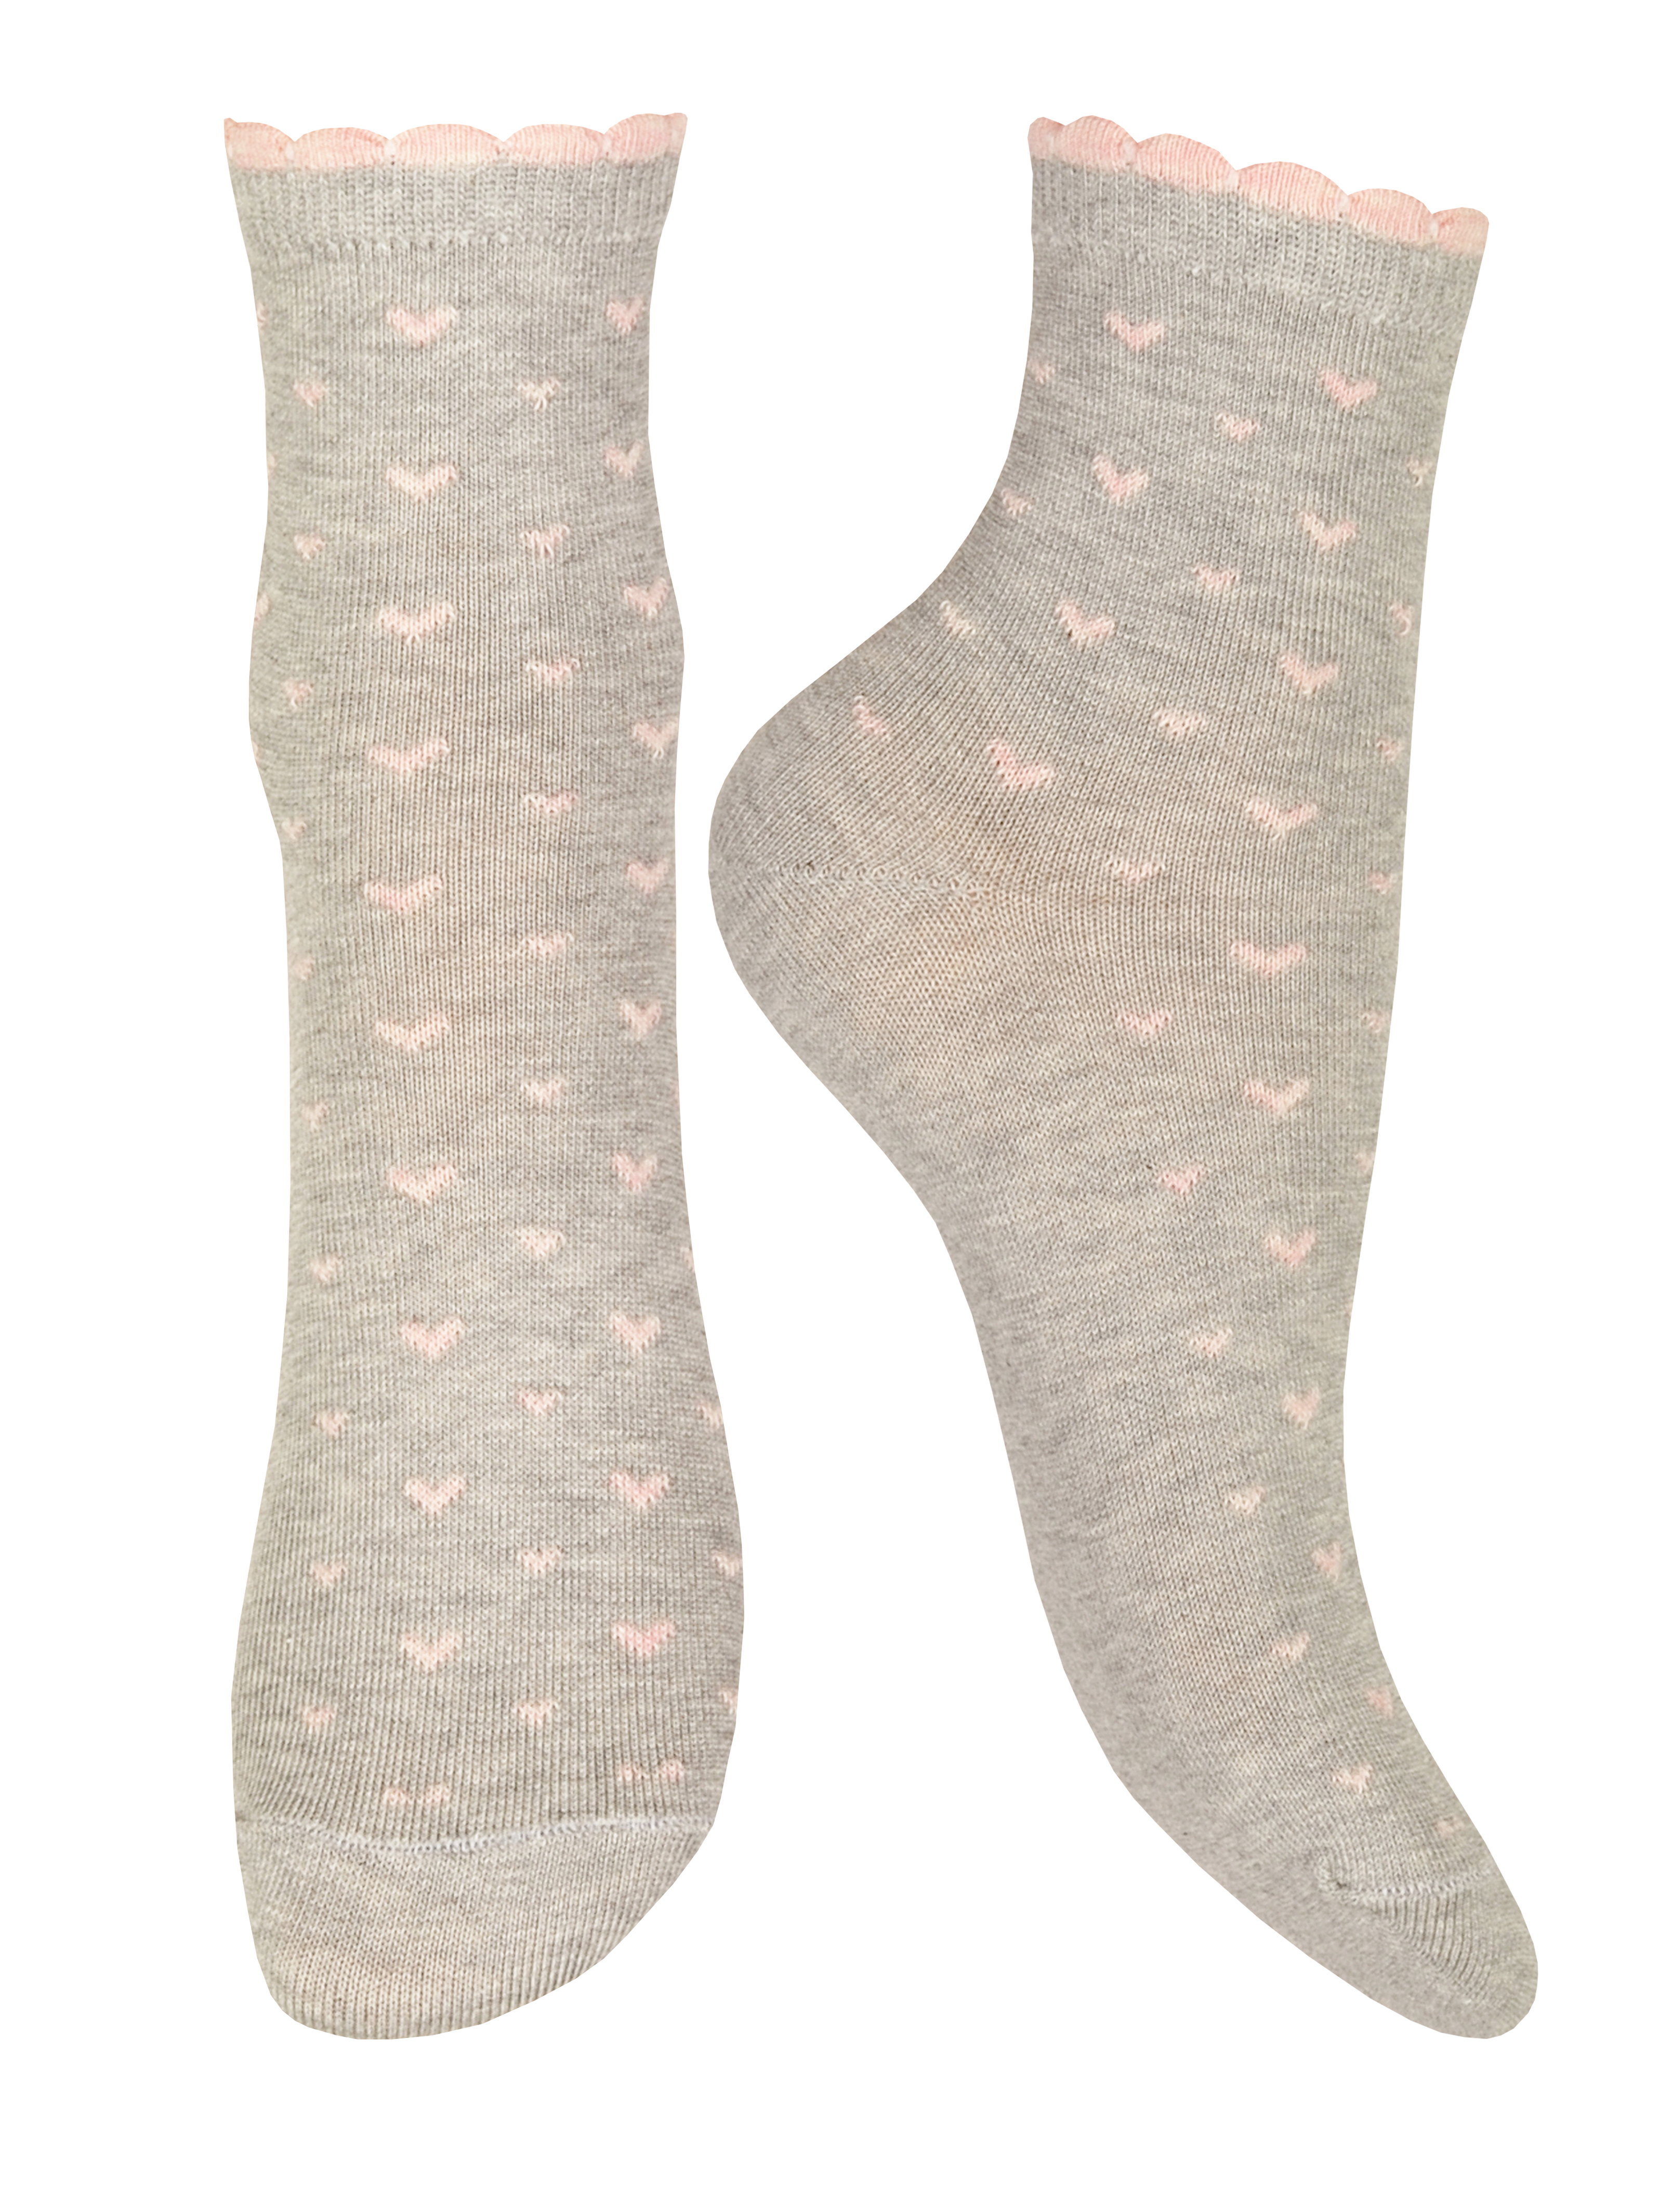 Носки Чудесная пара 1490серый-розовый - фото 1